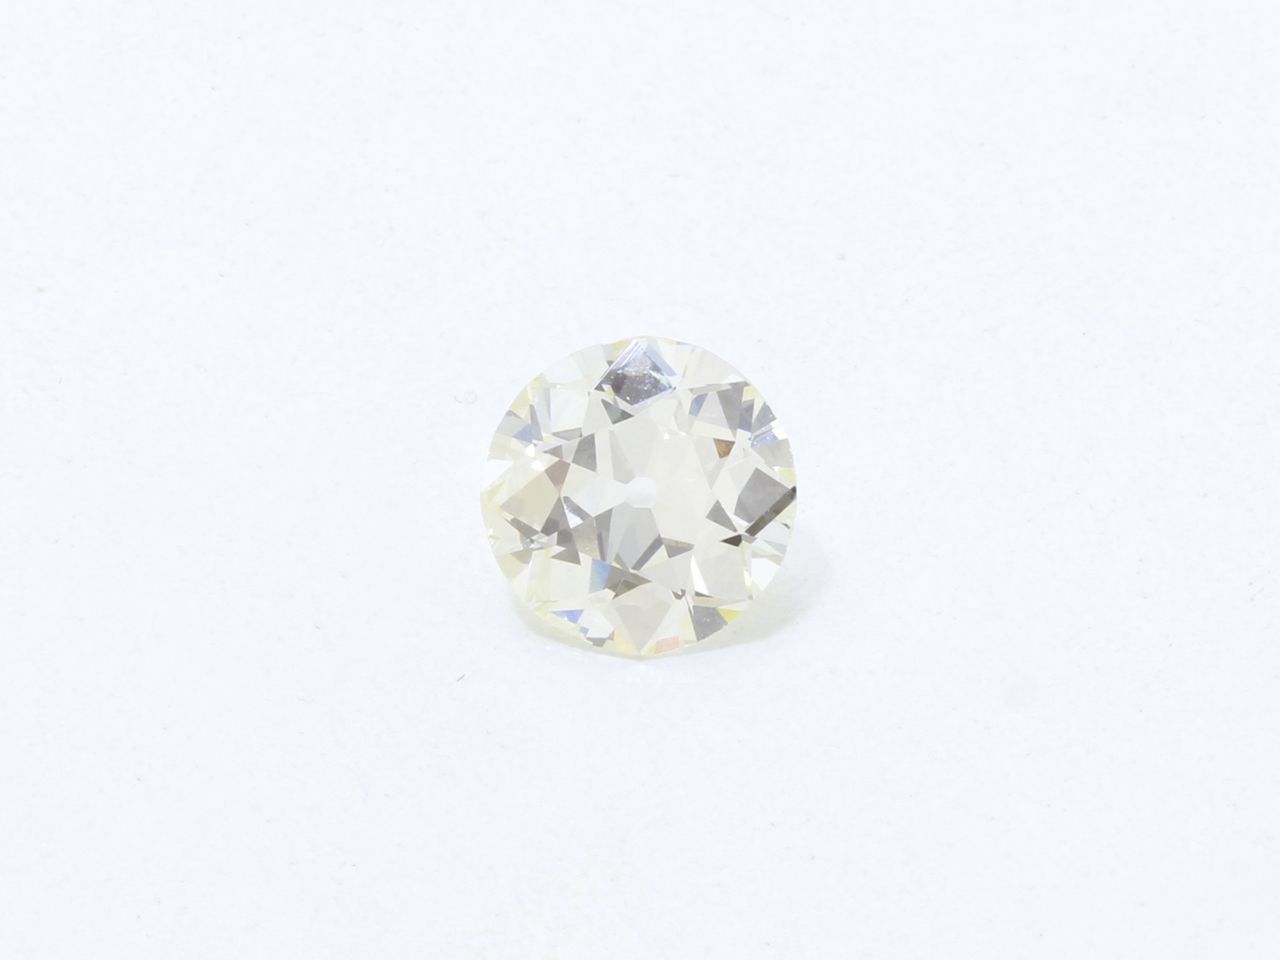 Null Diamant taille ancienne sur papier.

Poids du diamant: 4.67 cts. (petits ma&hellip;